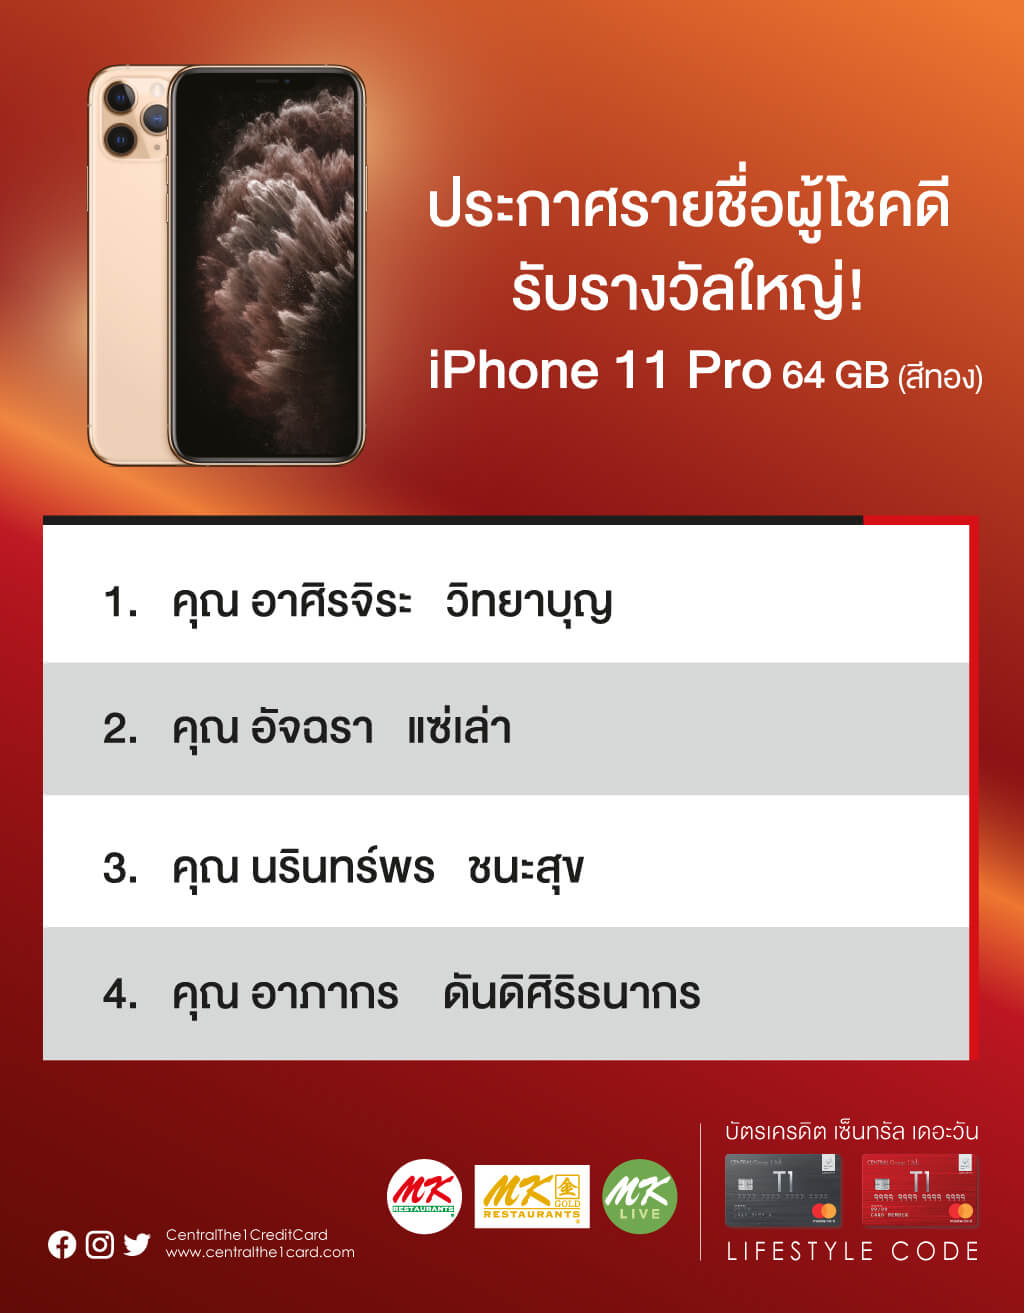 ประกาศรายชื่อผู้โชคดี รับรางวัลใหญ่! iPhone 11 Pro 64 GB